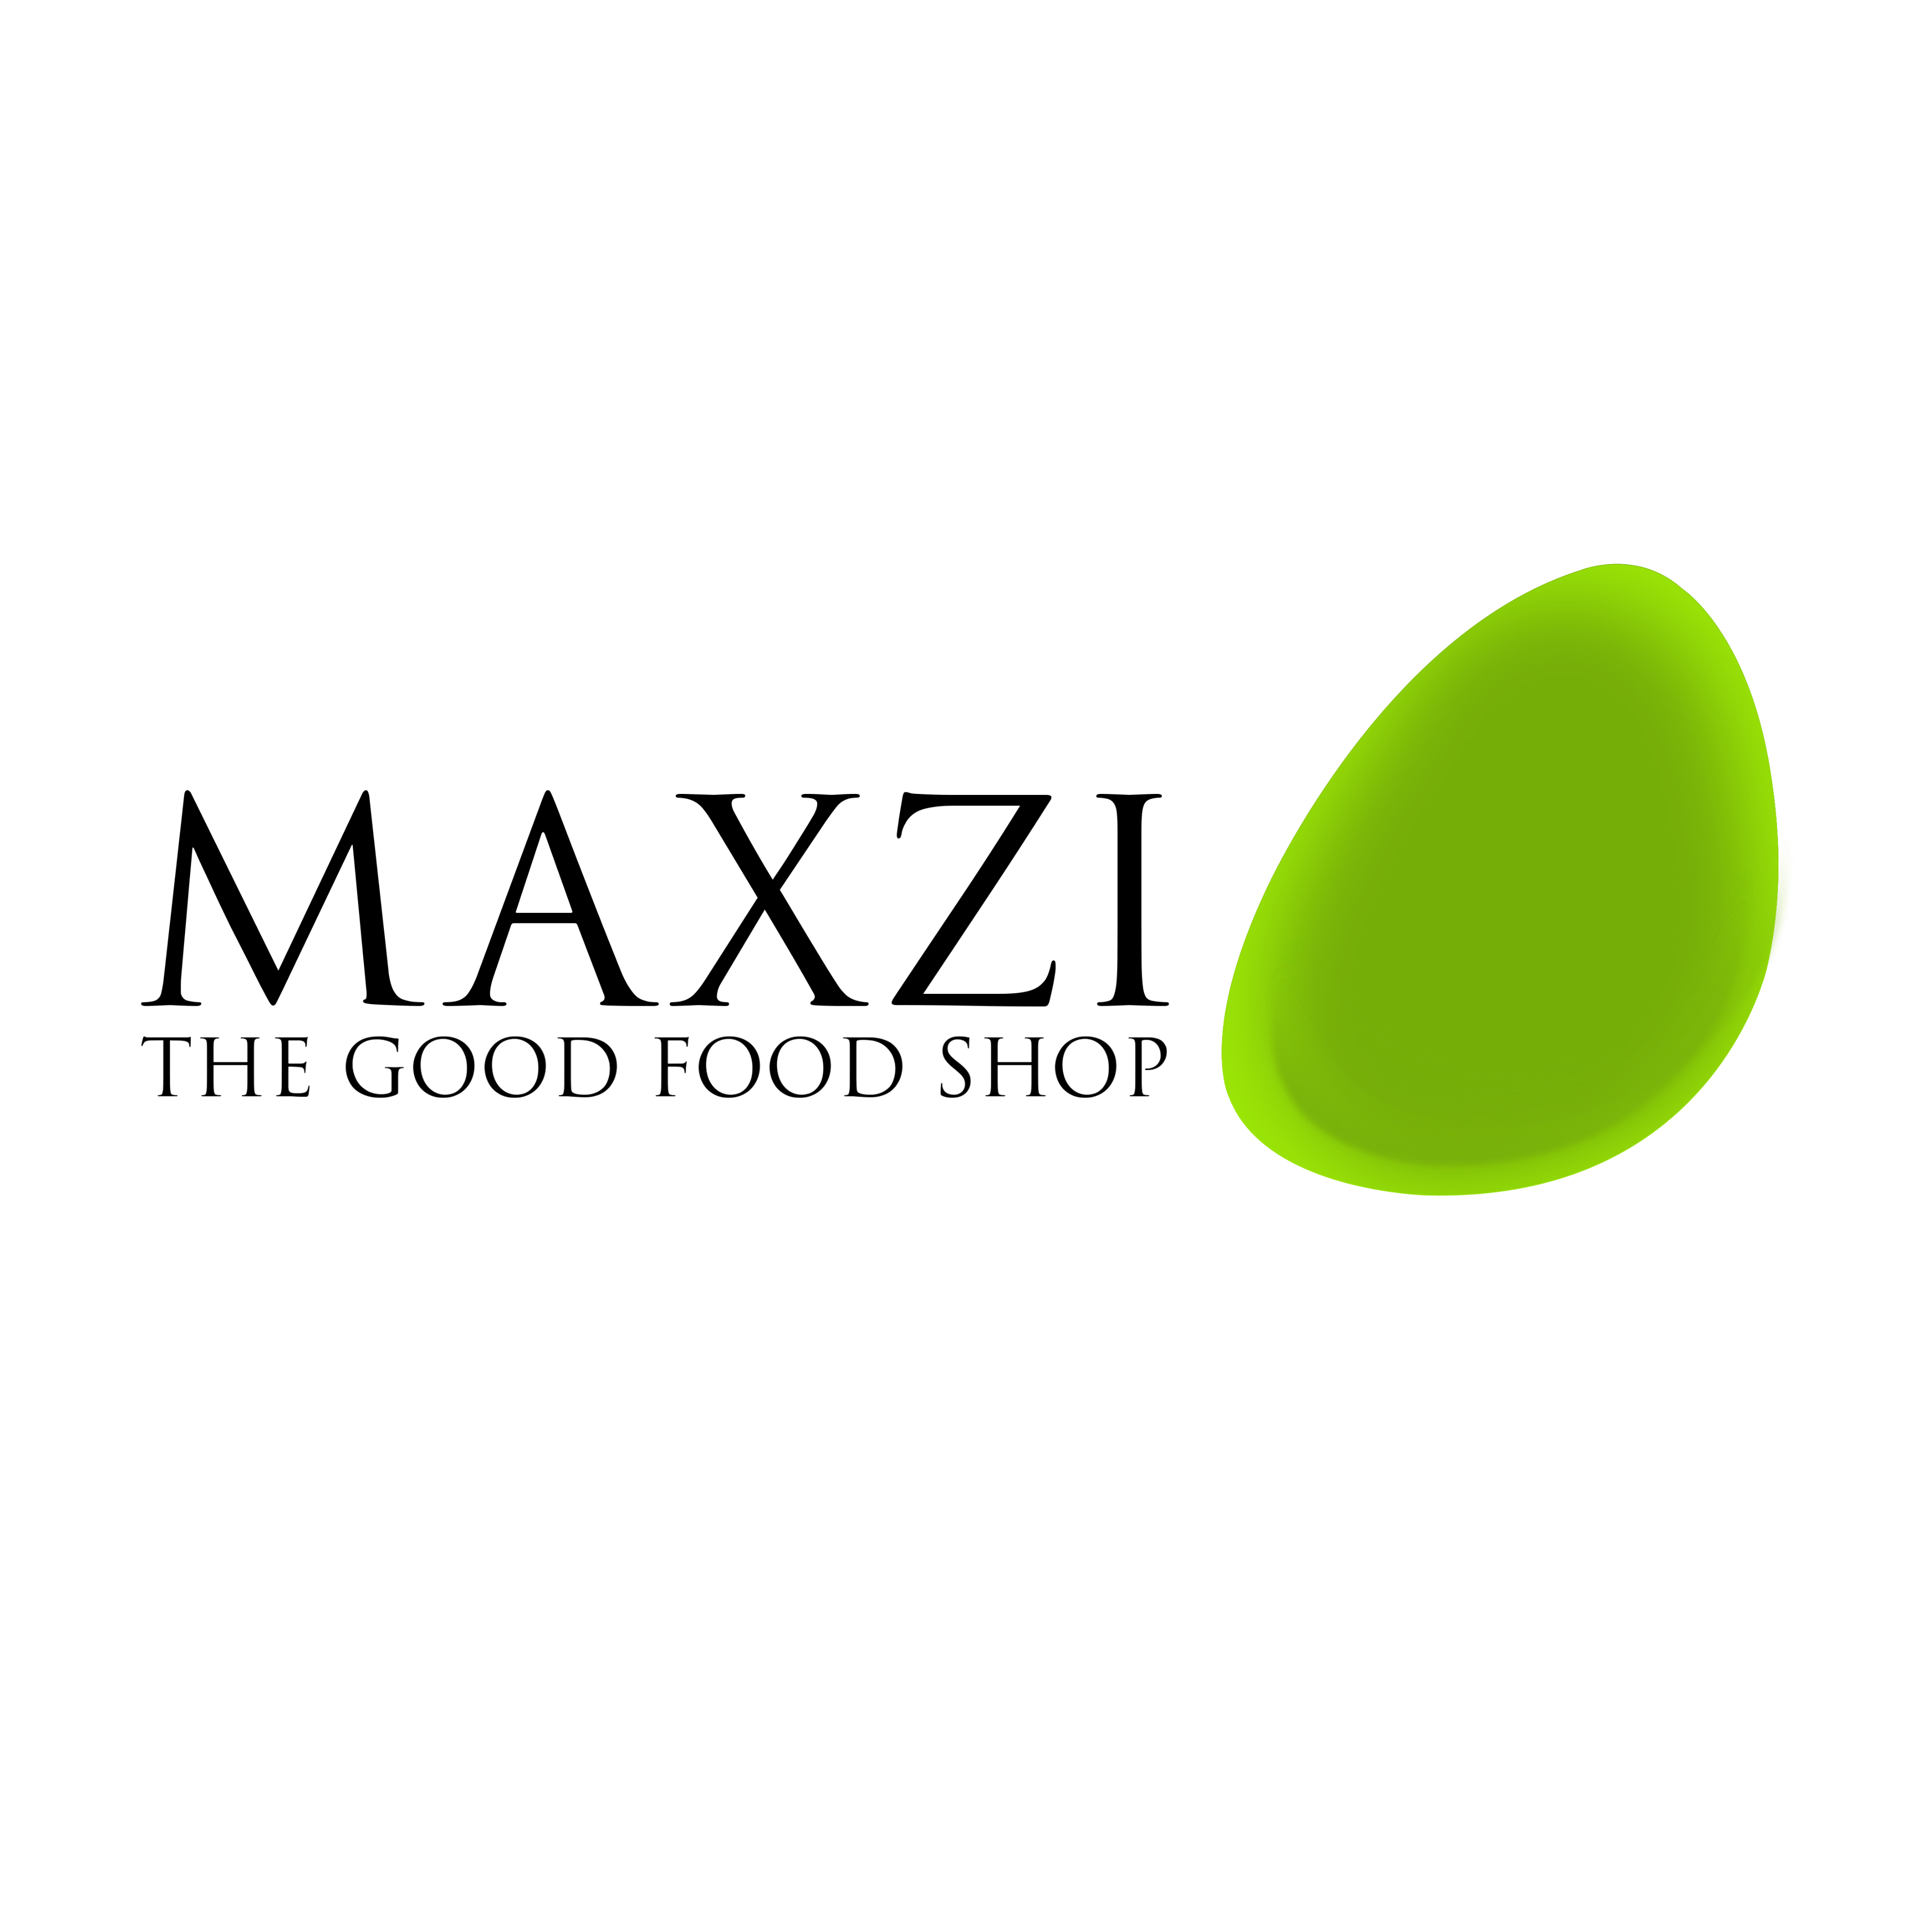 Maxzi.kh